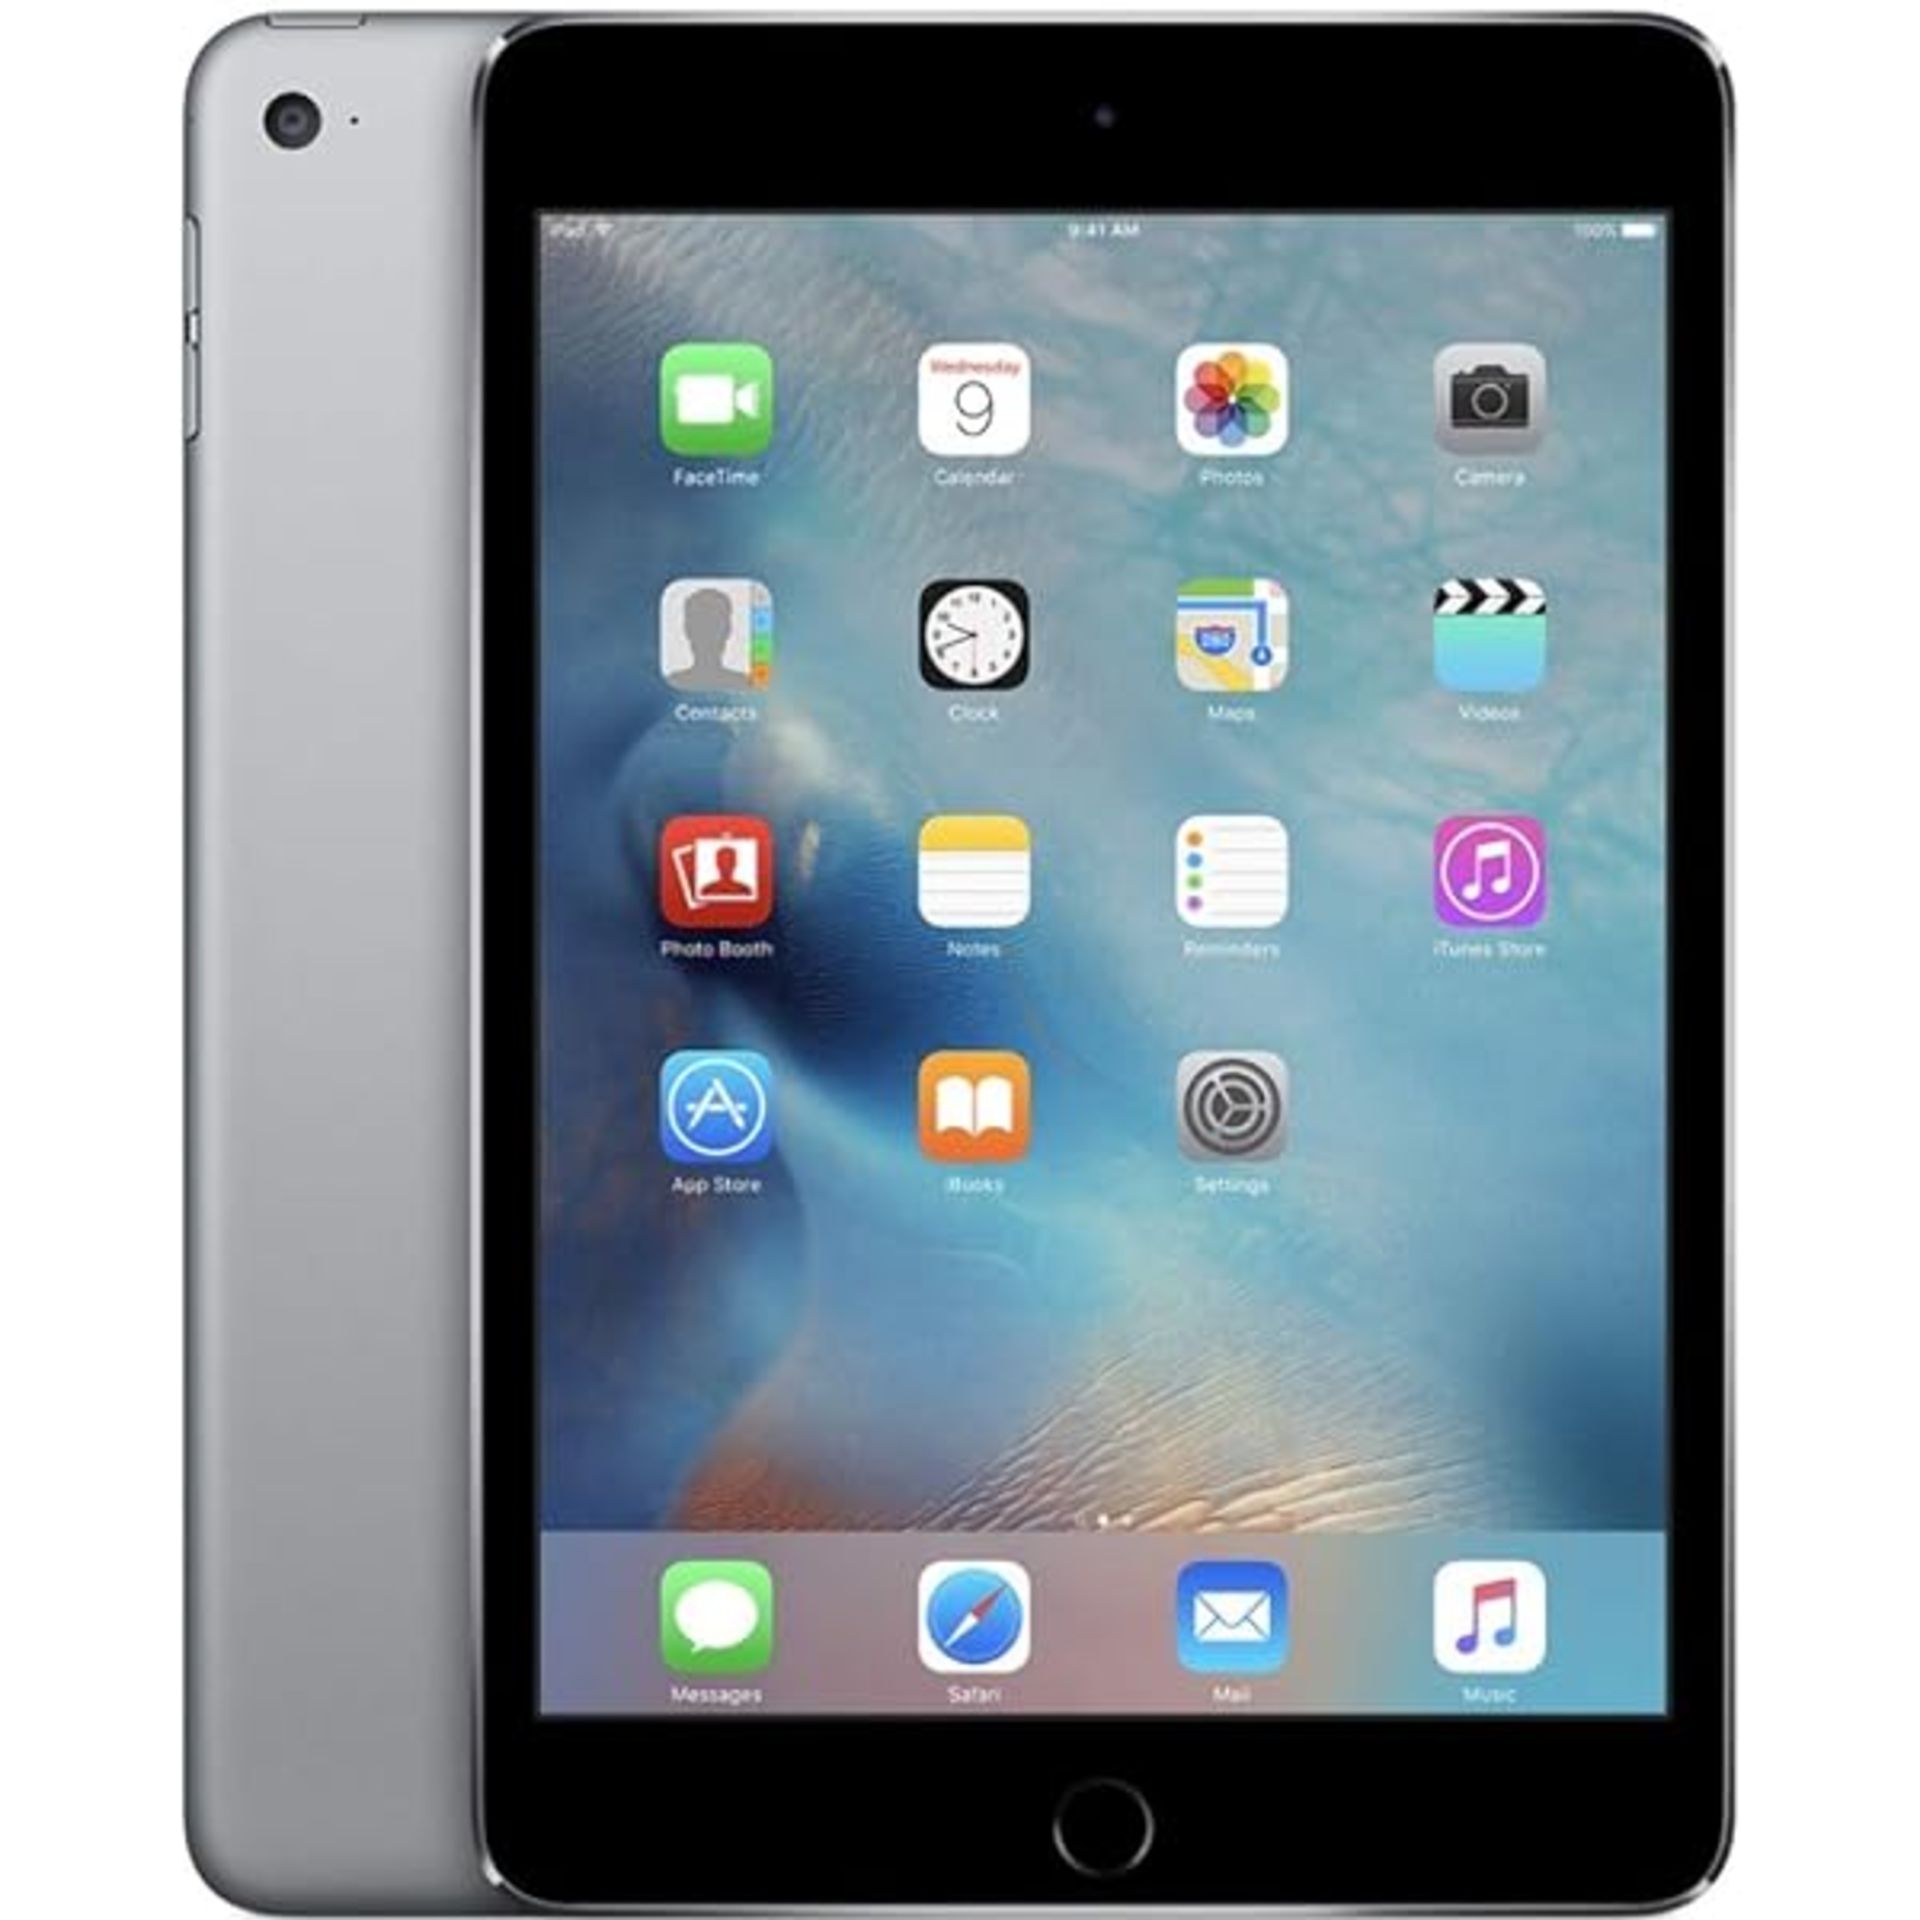 Apple iPad Mini 2 32GB WiFi Space Grey